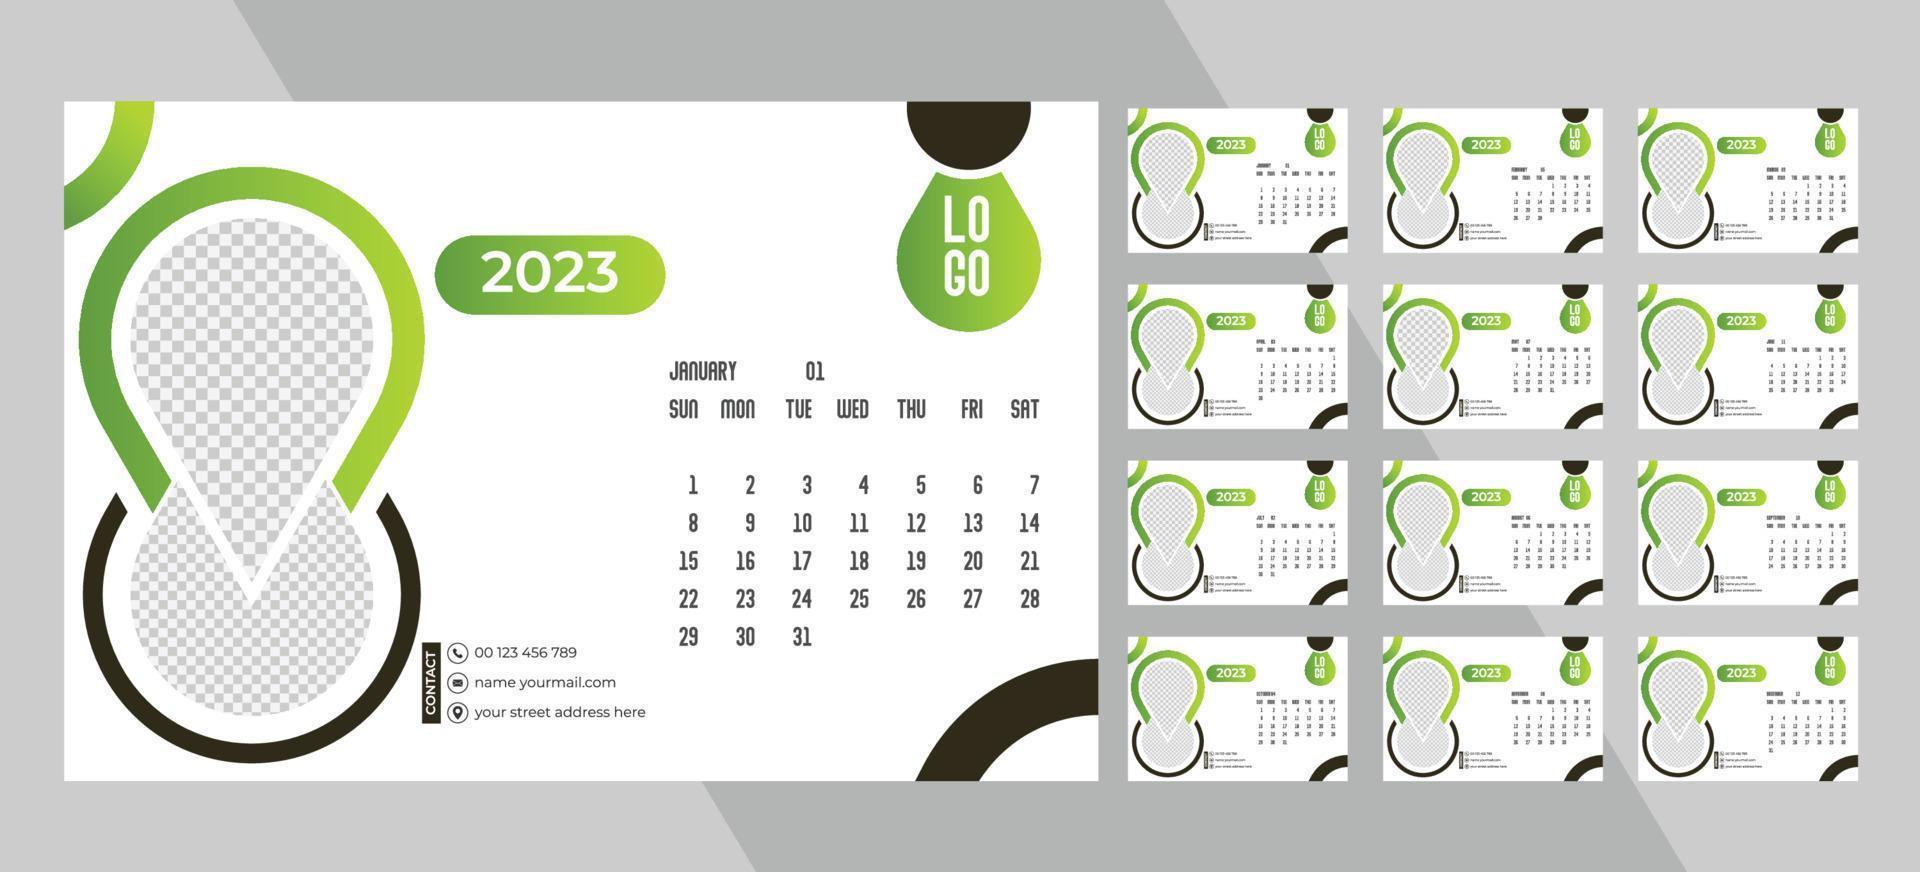 calendrier photo mensuel de bureau 2023. mise en page simple du calendrier photo horizontal mensuel pour le nouvel an 2023 en anglais. calendrier de couverture et modèles de 12 mois. vecteur